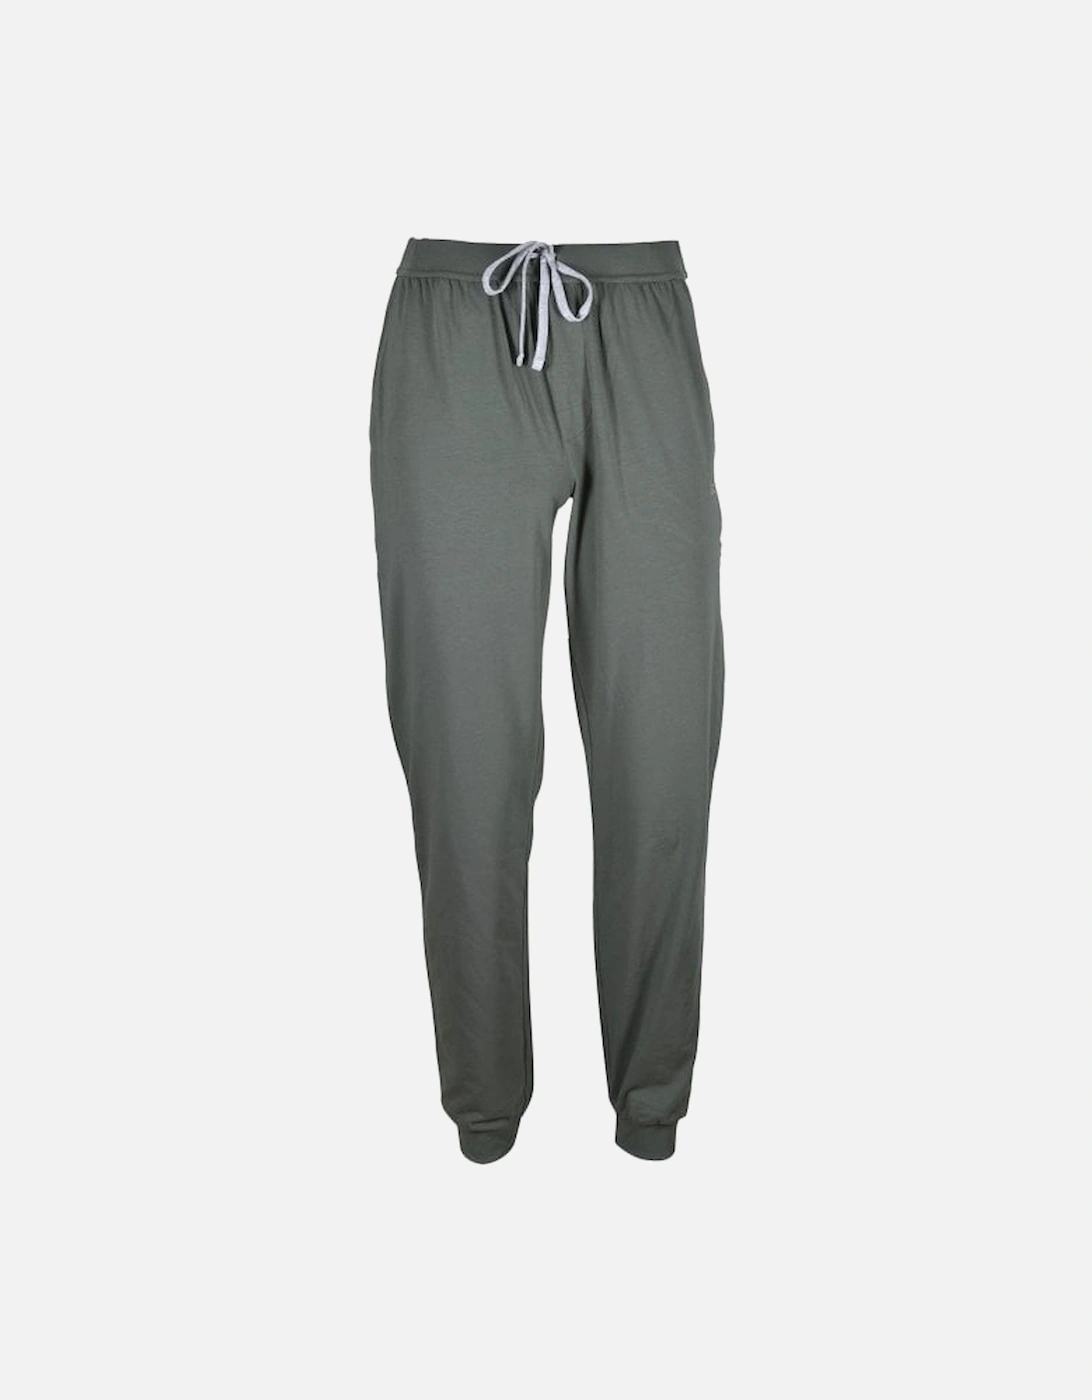 Mix & Match Loungewear Jogging Bottoms, Khaki/grey, 4 of 3